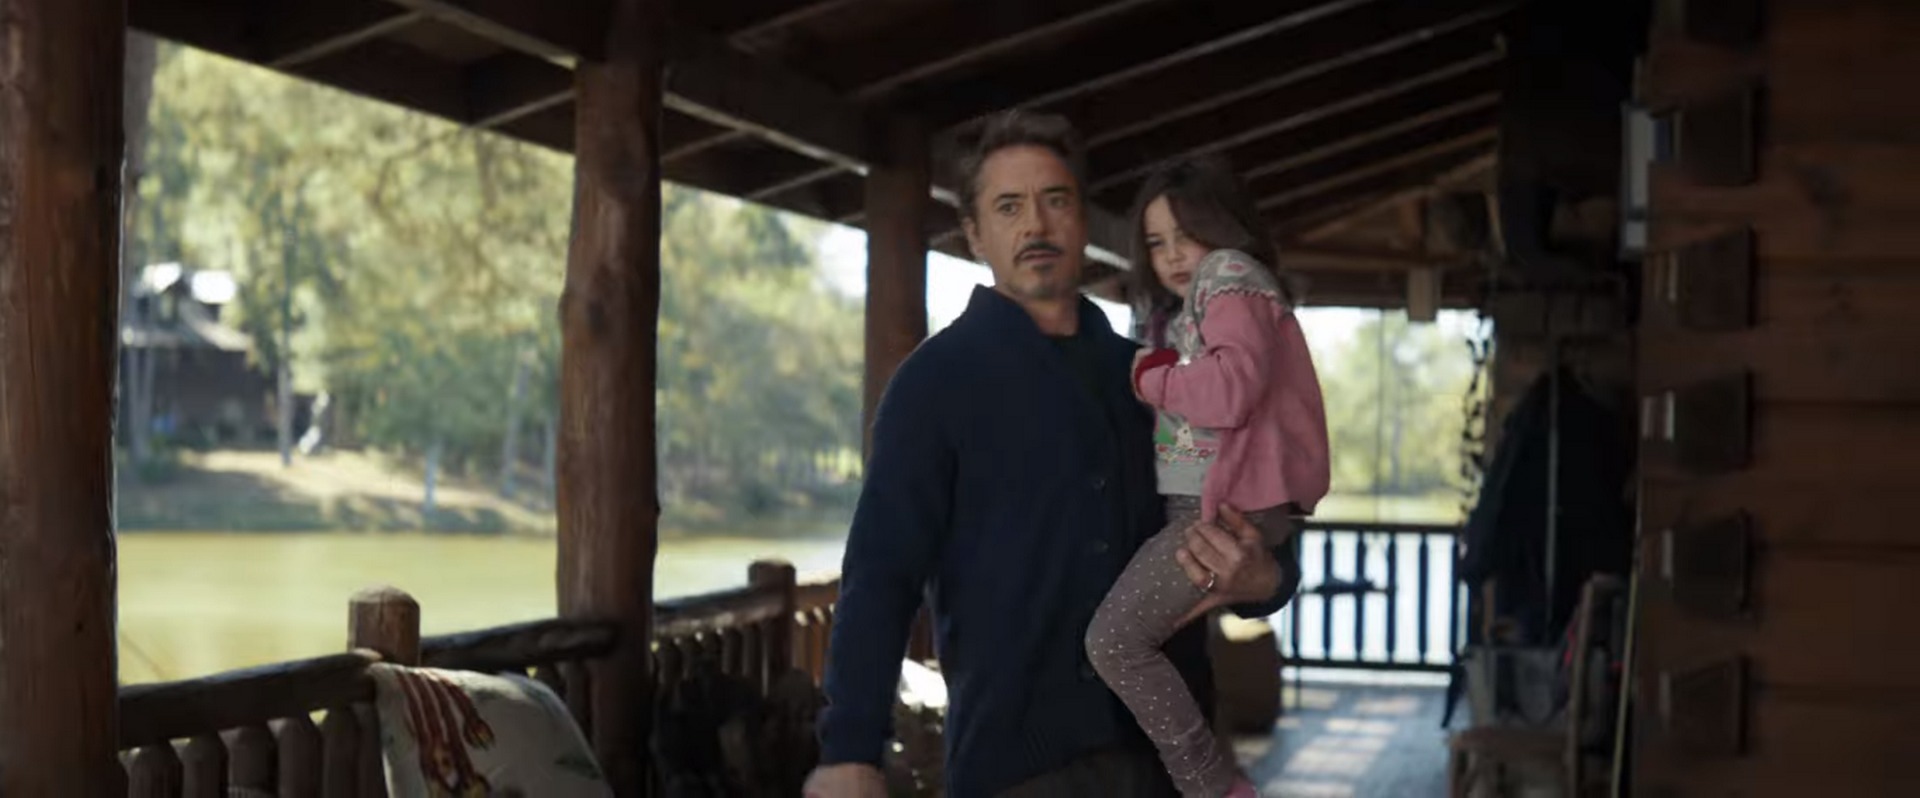 Verdade CHOCANTE sobre filha de Tony Stark é revelada em Vingadores: Ultimato